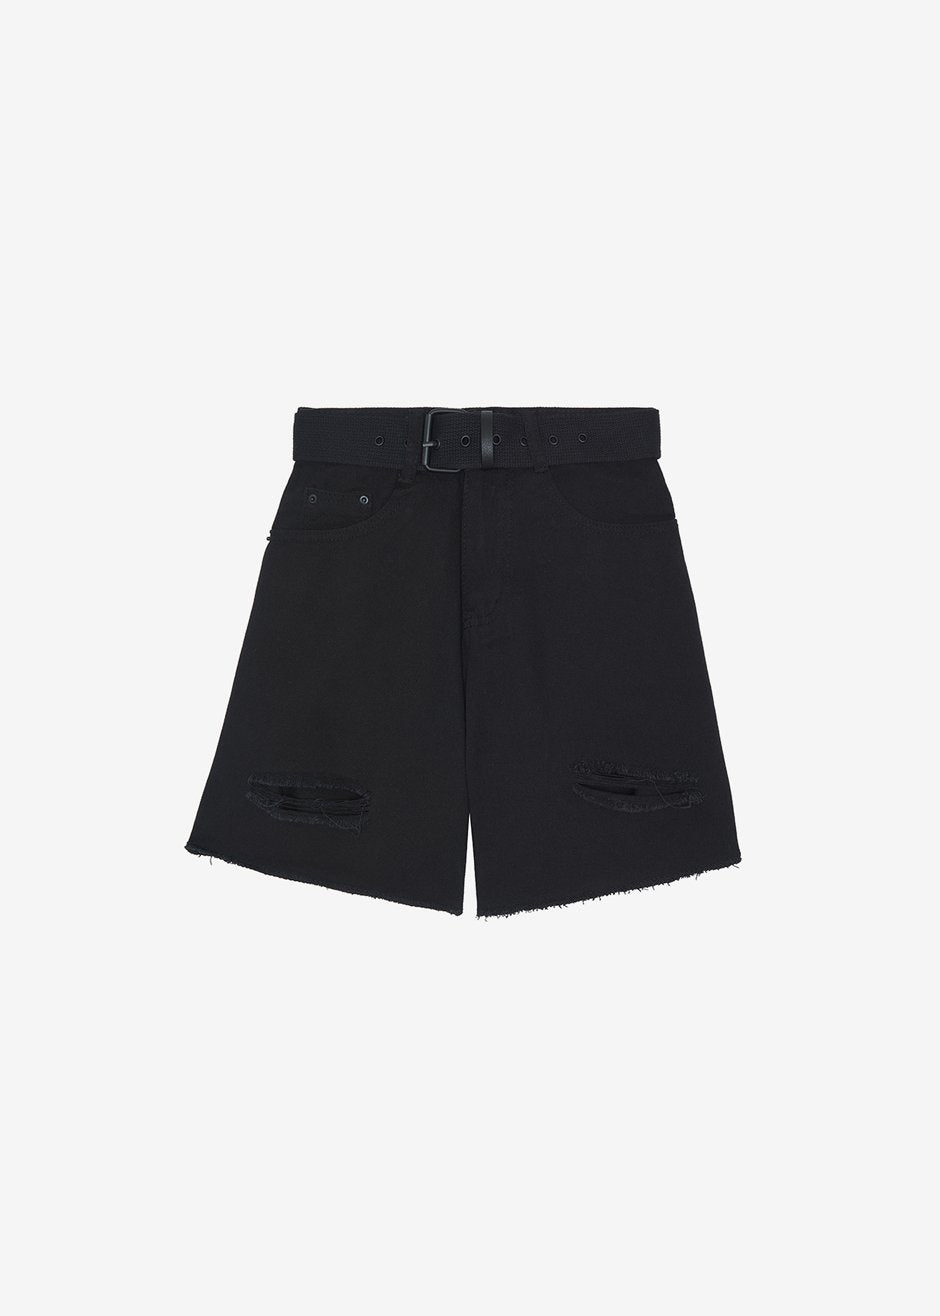 Arlet Belted Shorts - Black